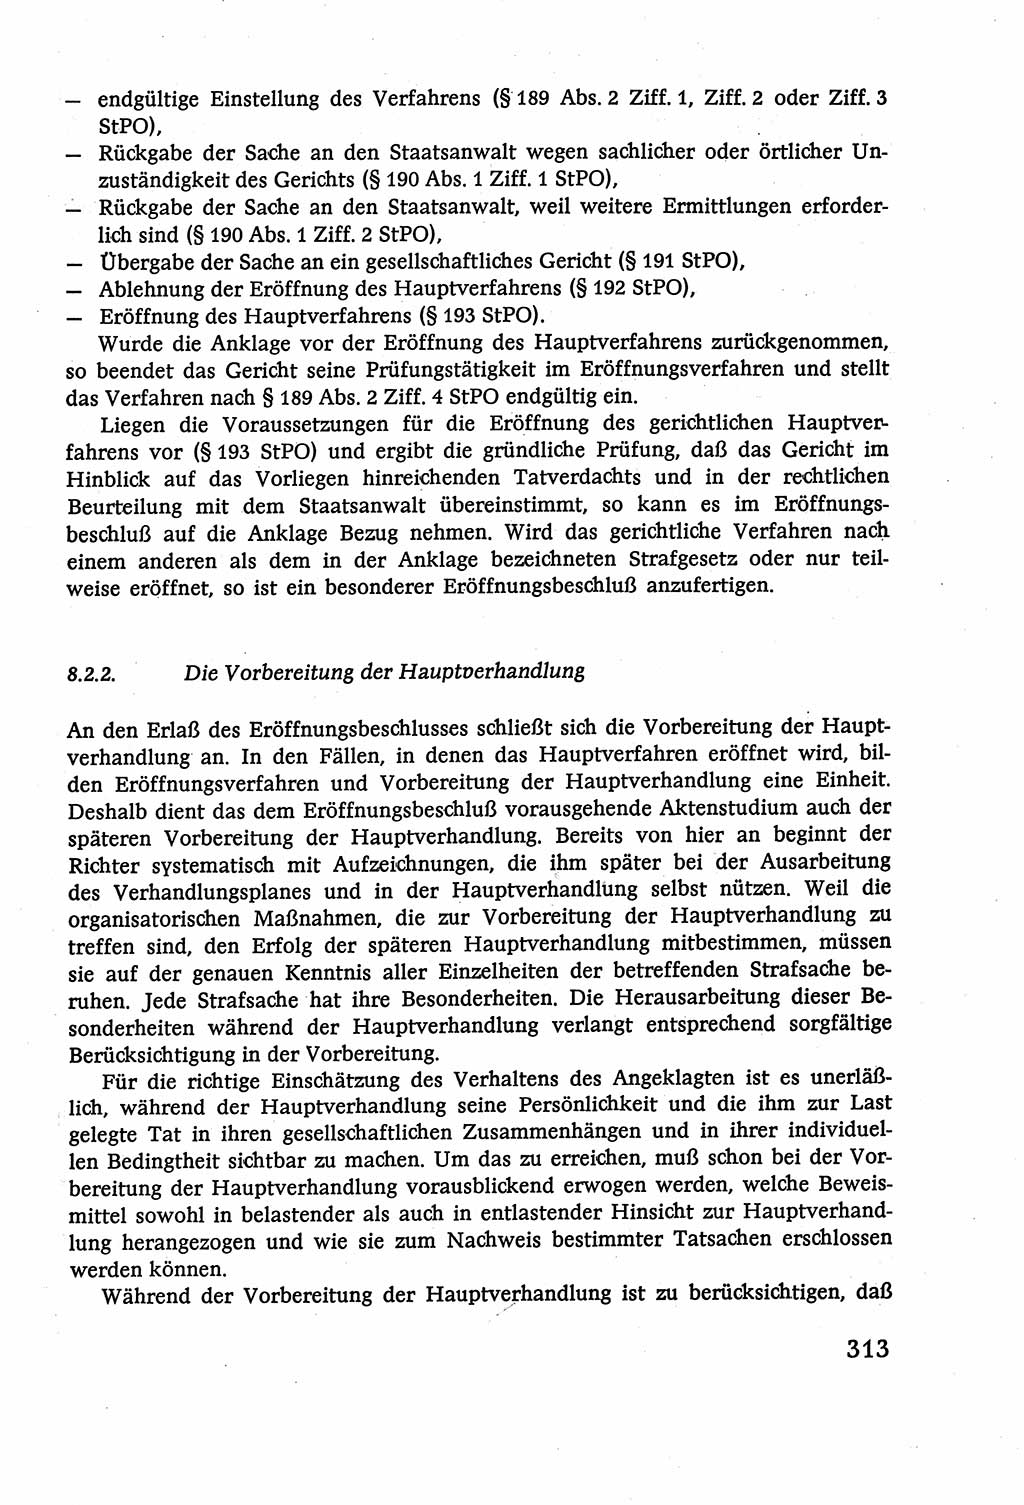 Strafverfahrensrecht [Deutsche Demokratische Republik (DDR)], Lehrbuch 1977, Seite 313 (Strafverf.-R. DDR Lb. 1977, S. 313)